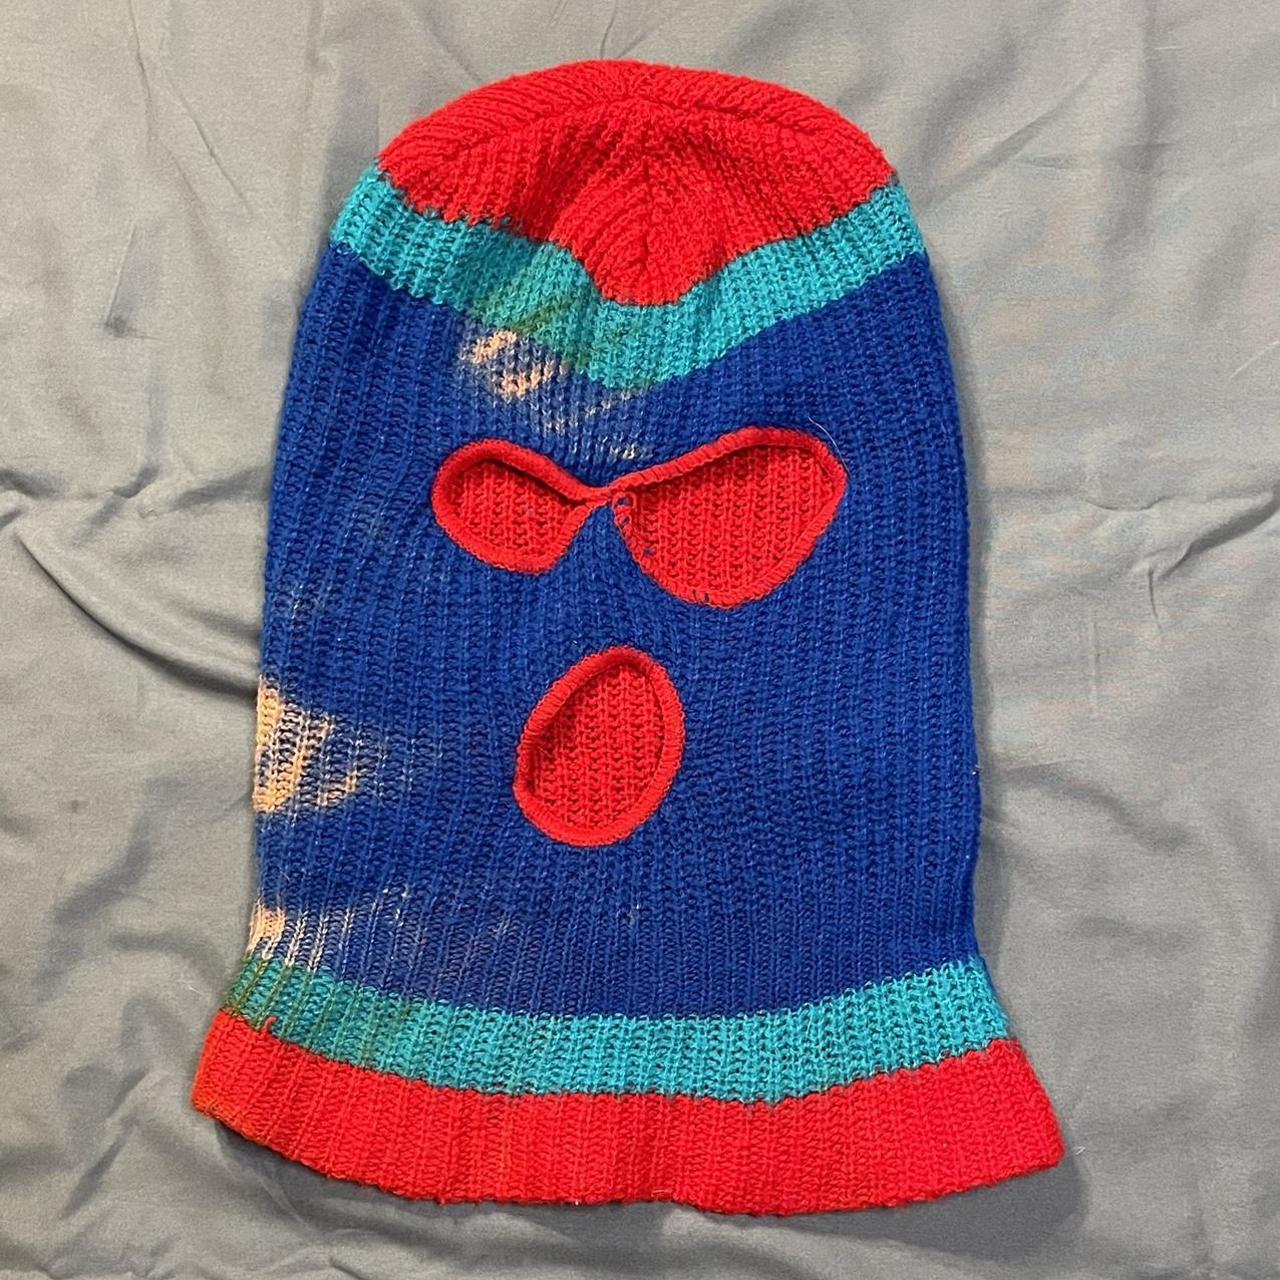 Vintage Thrashed Balaclava knit Ski Mask Tri-color... - Depop